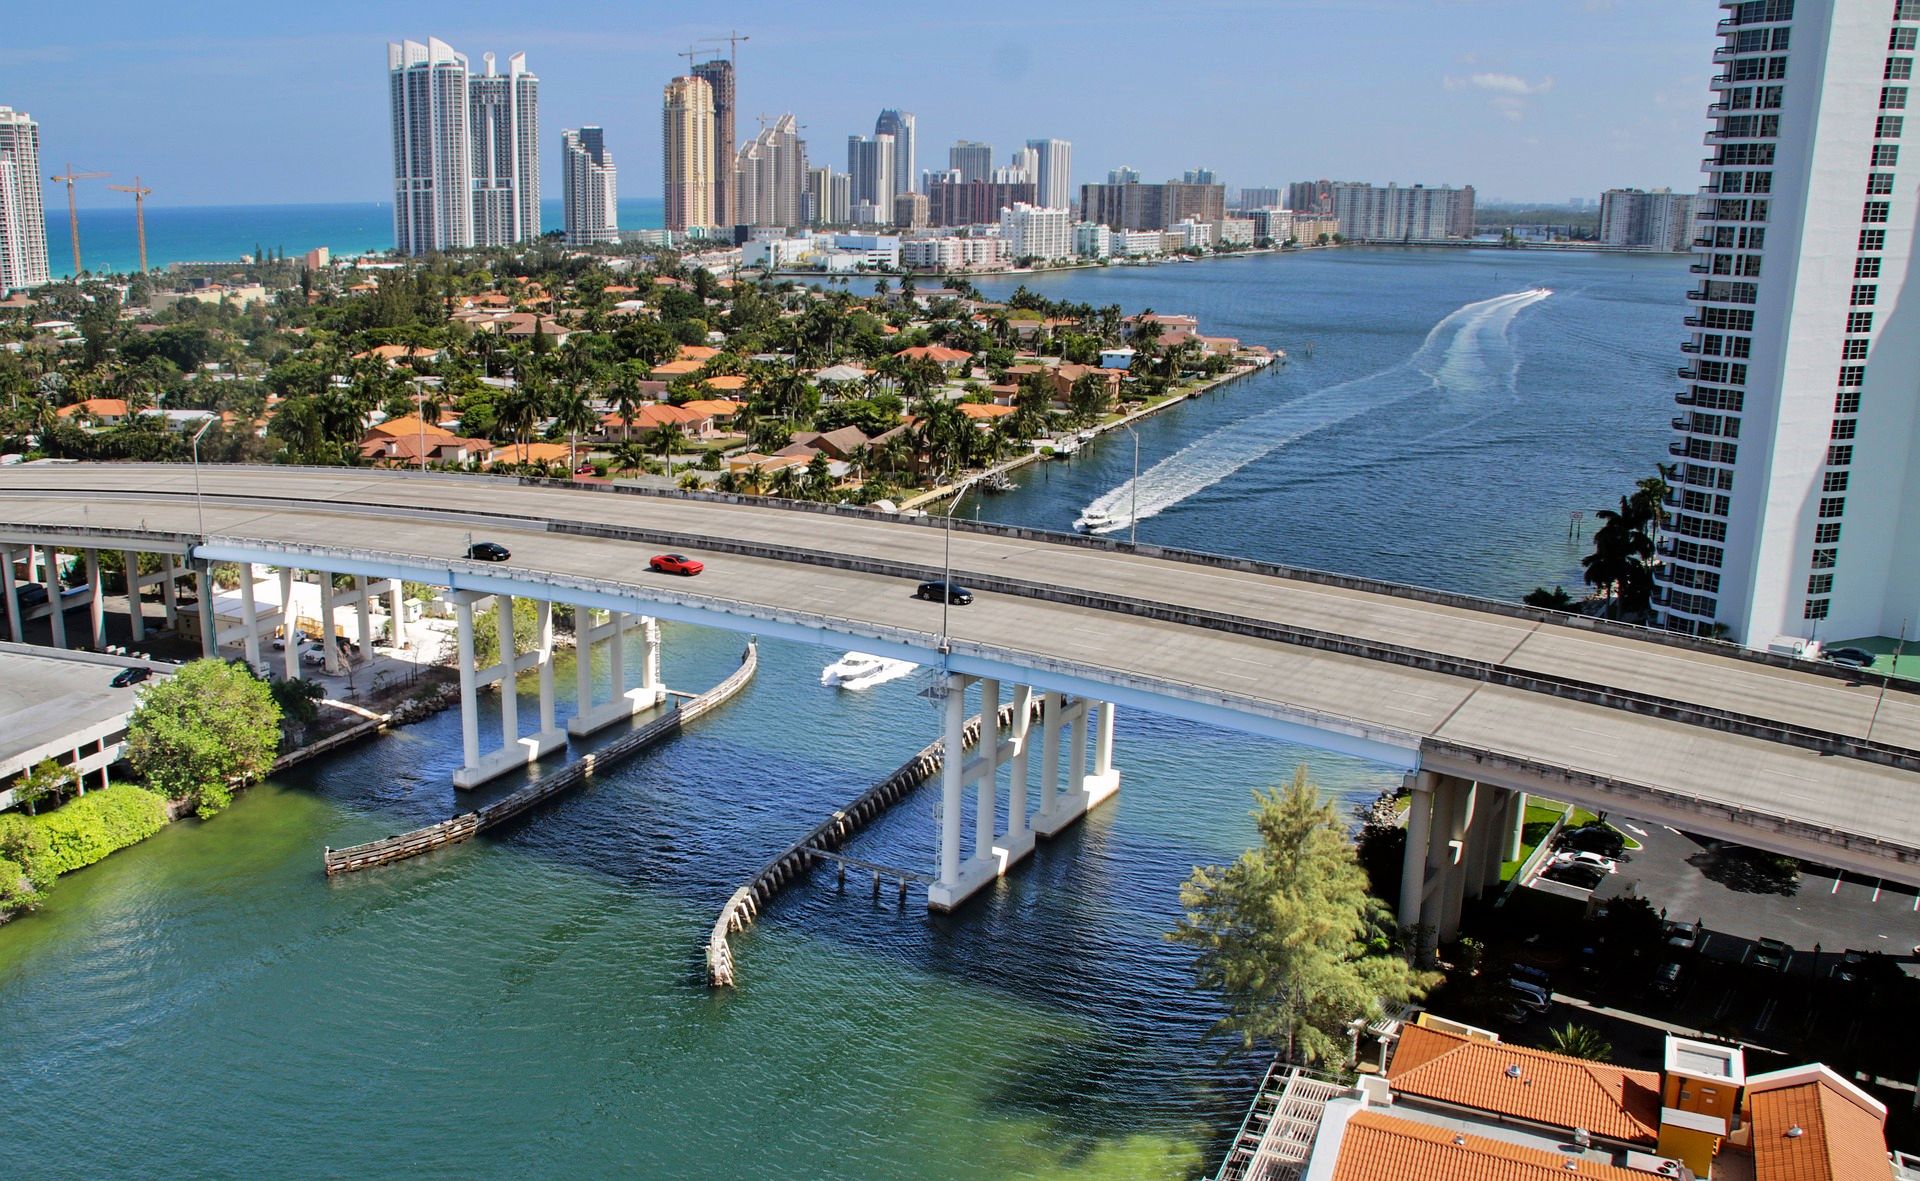 Miami Beach awarded North America’s Leading Beach Destination and North America’s Leading City Destination